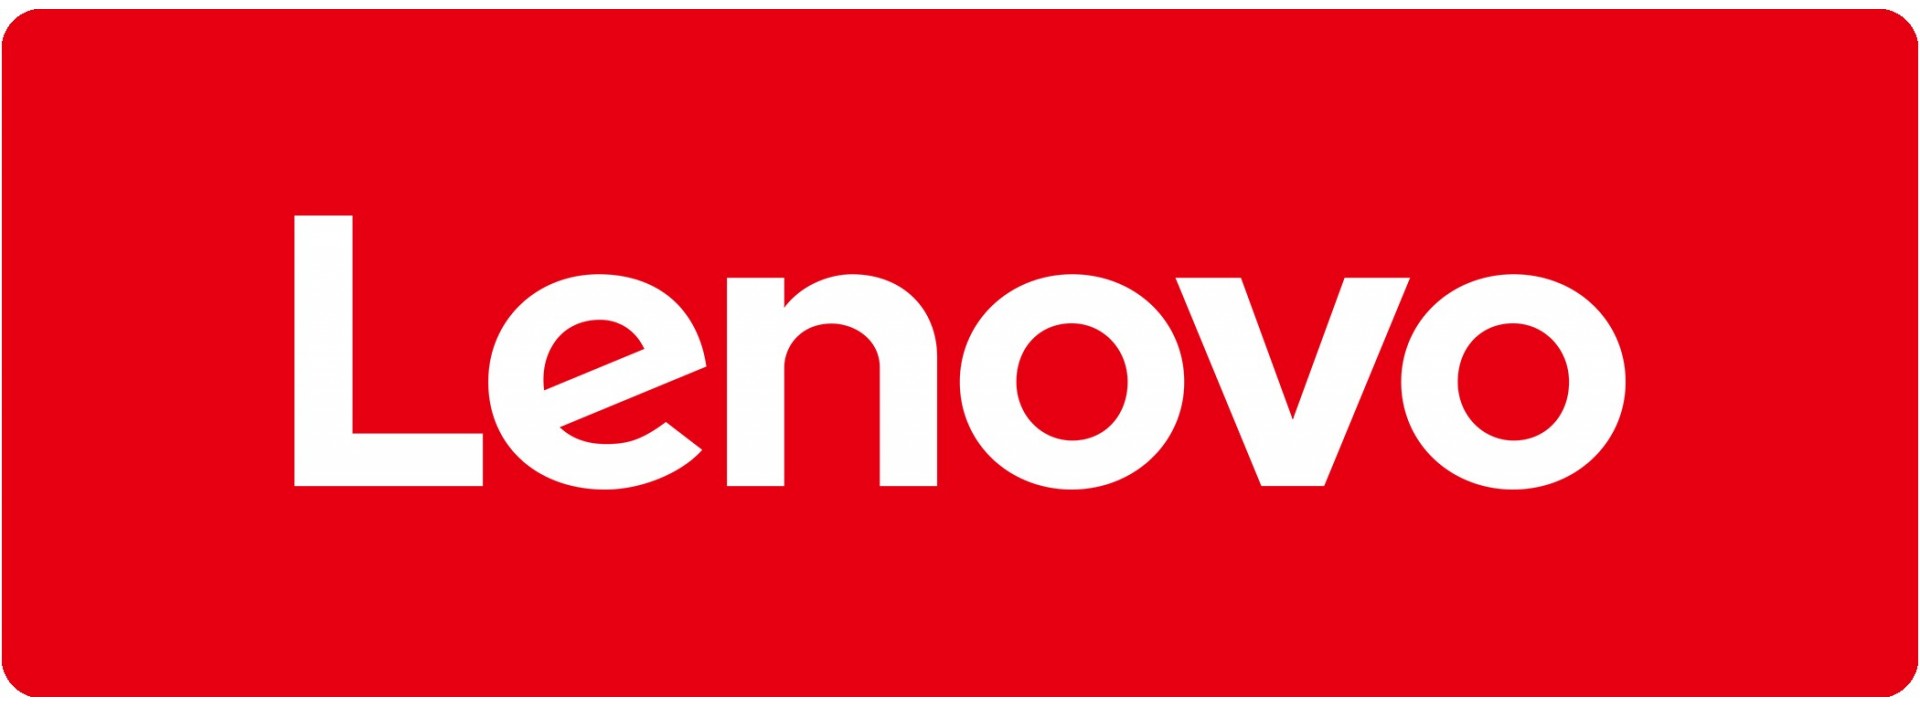 Fundas PERSONALIZADAS para Lenovo, el mejor precio y calidad